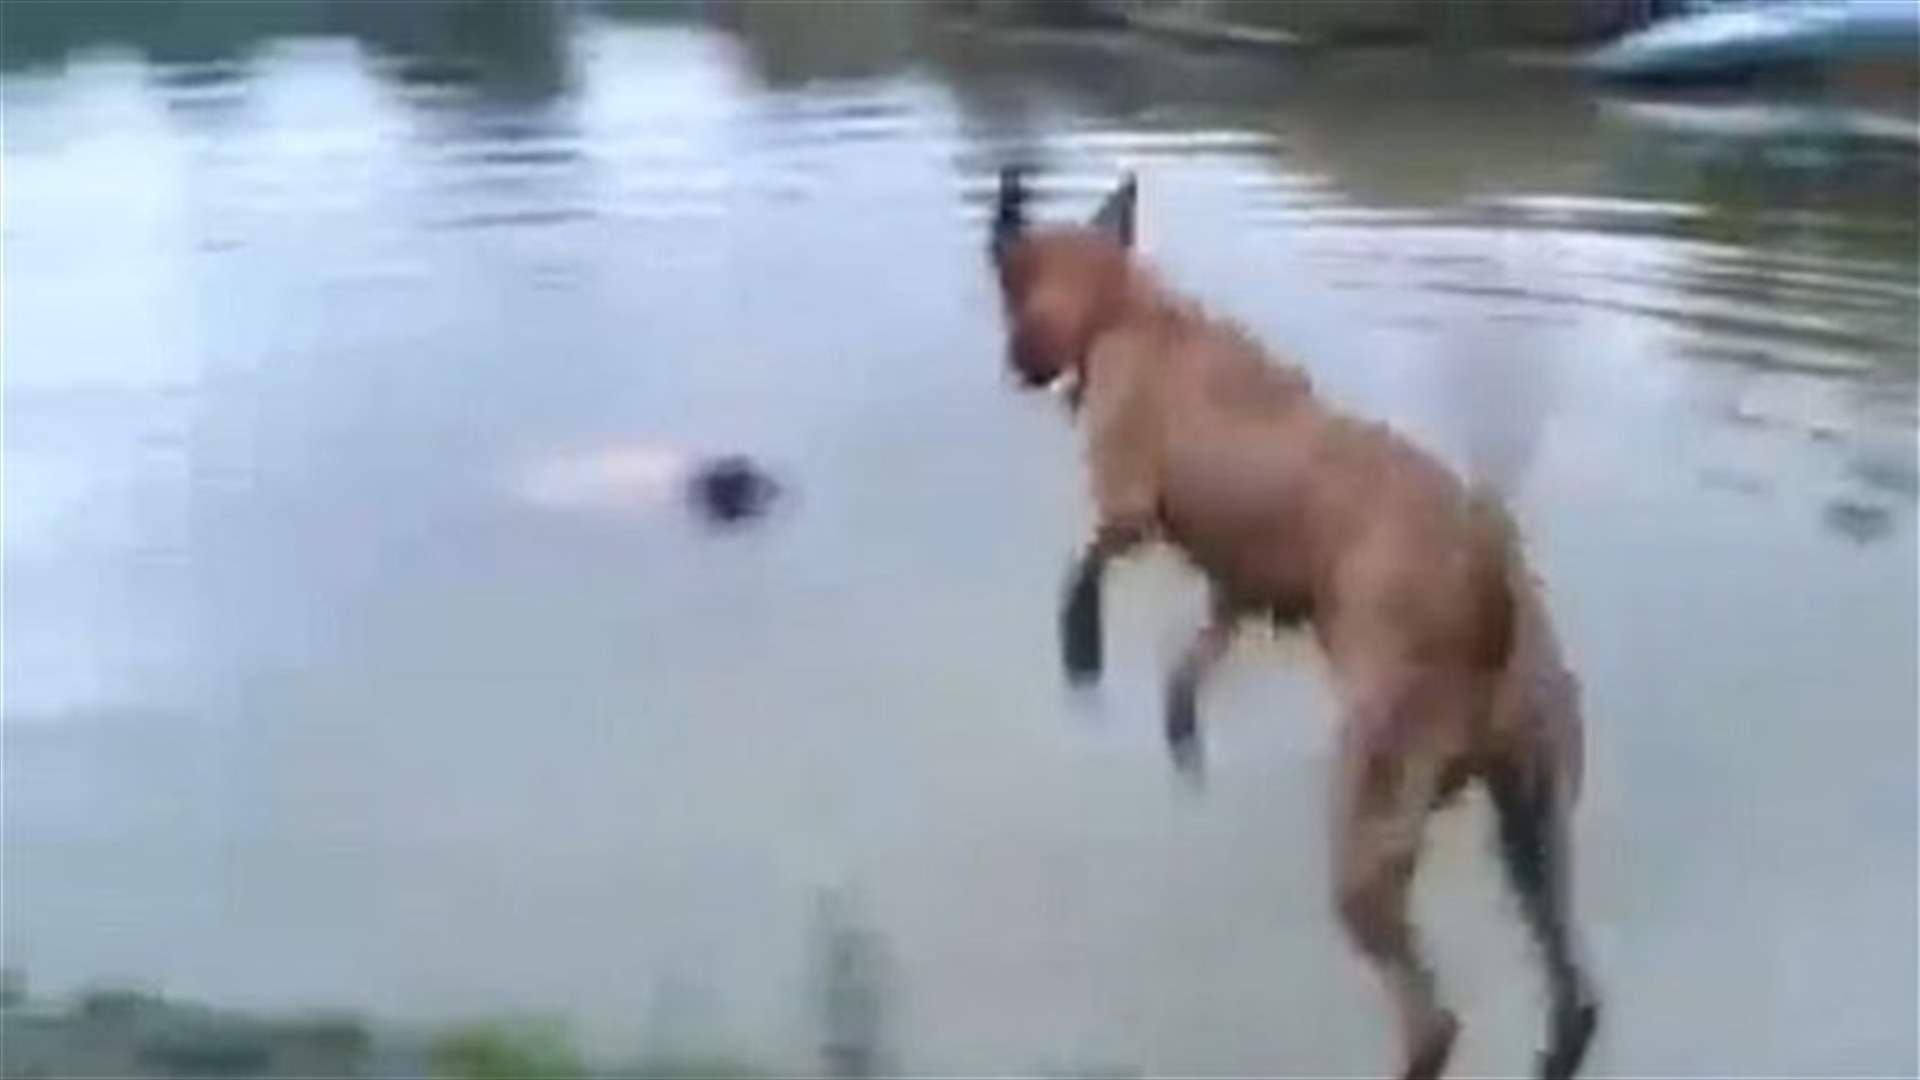 بالفيديو: كلب ينقذ صاحبه من الغرق بضربه على رأسه